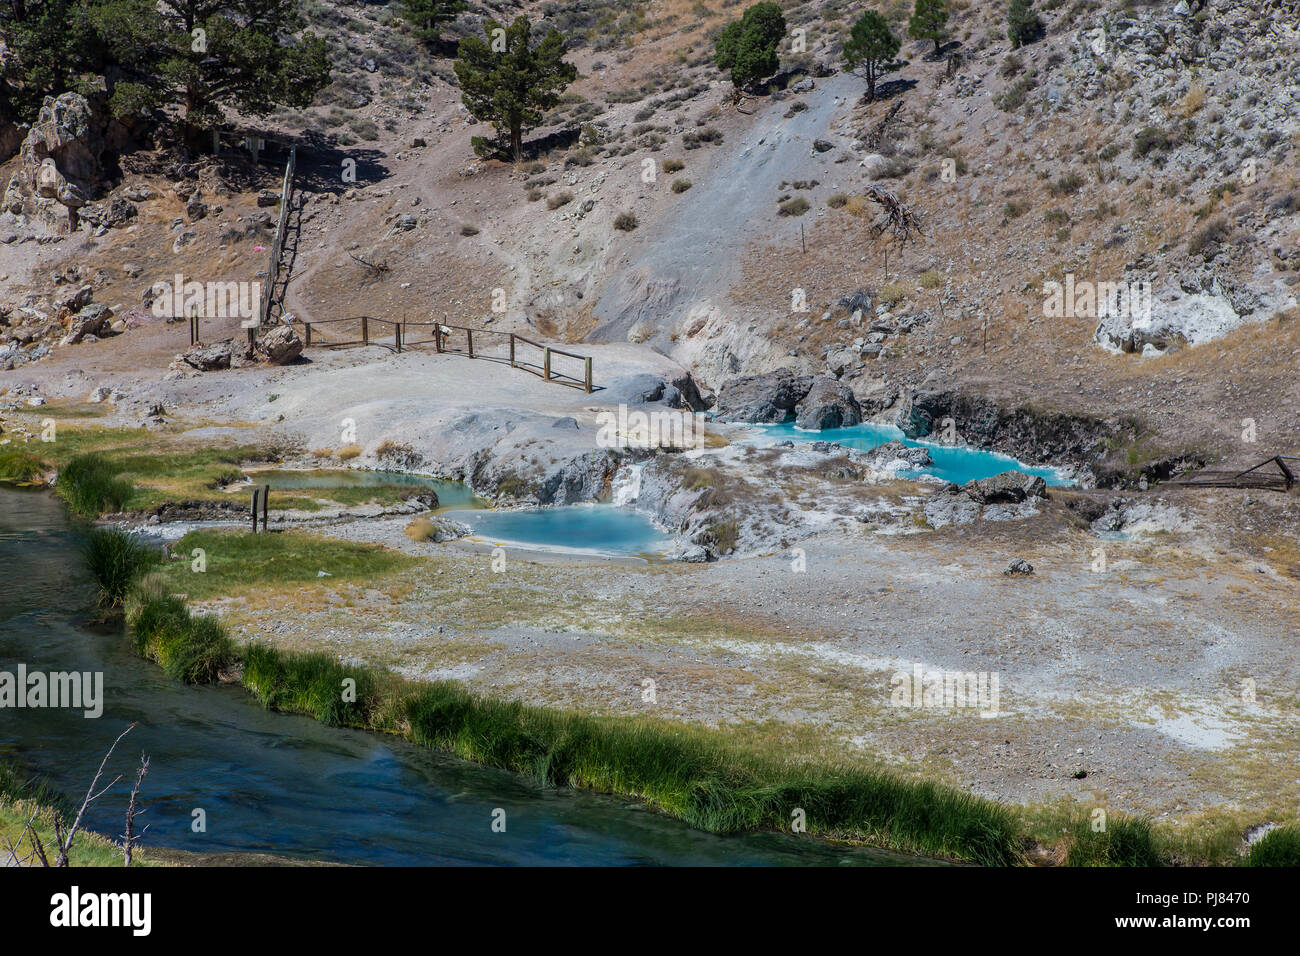 Hot Creek è parte della lunga valle Caldera ospita un attivo sistema idrotermale che include hot springs, fumarole fori per la fuoriuscita del vapore e di depositi di minerali Foto Stock